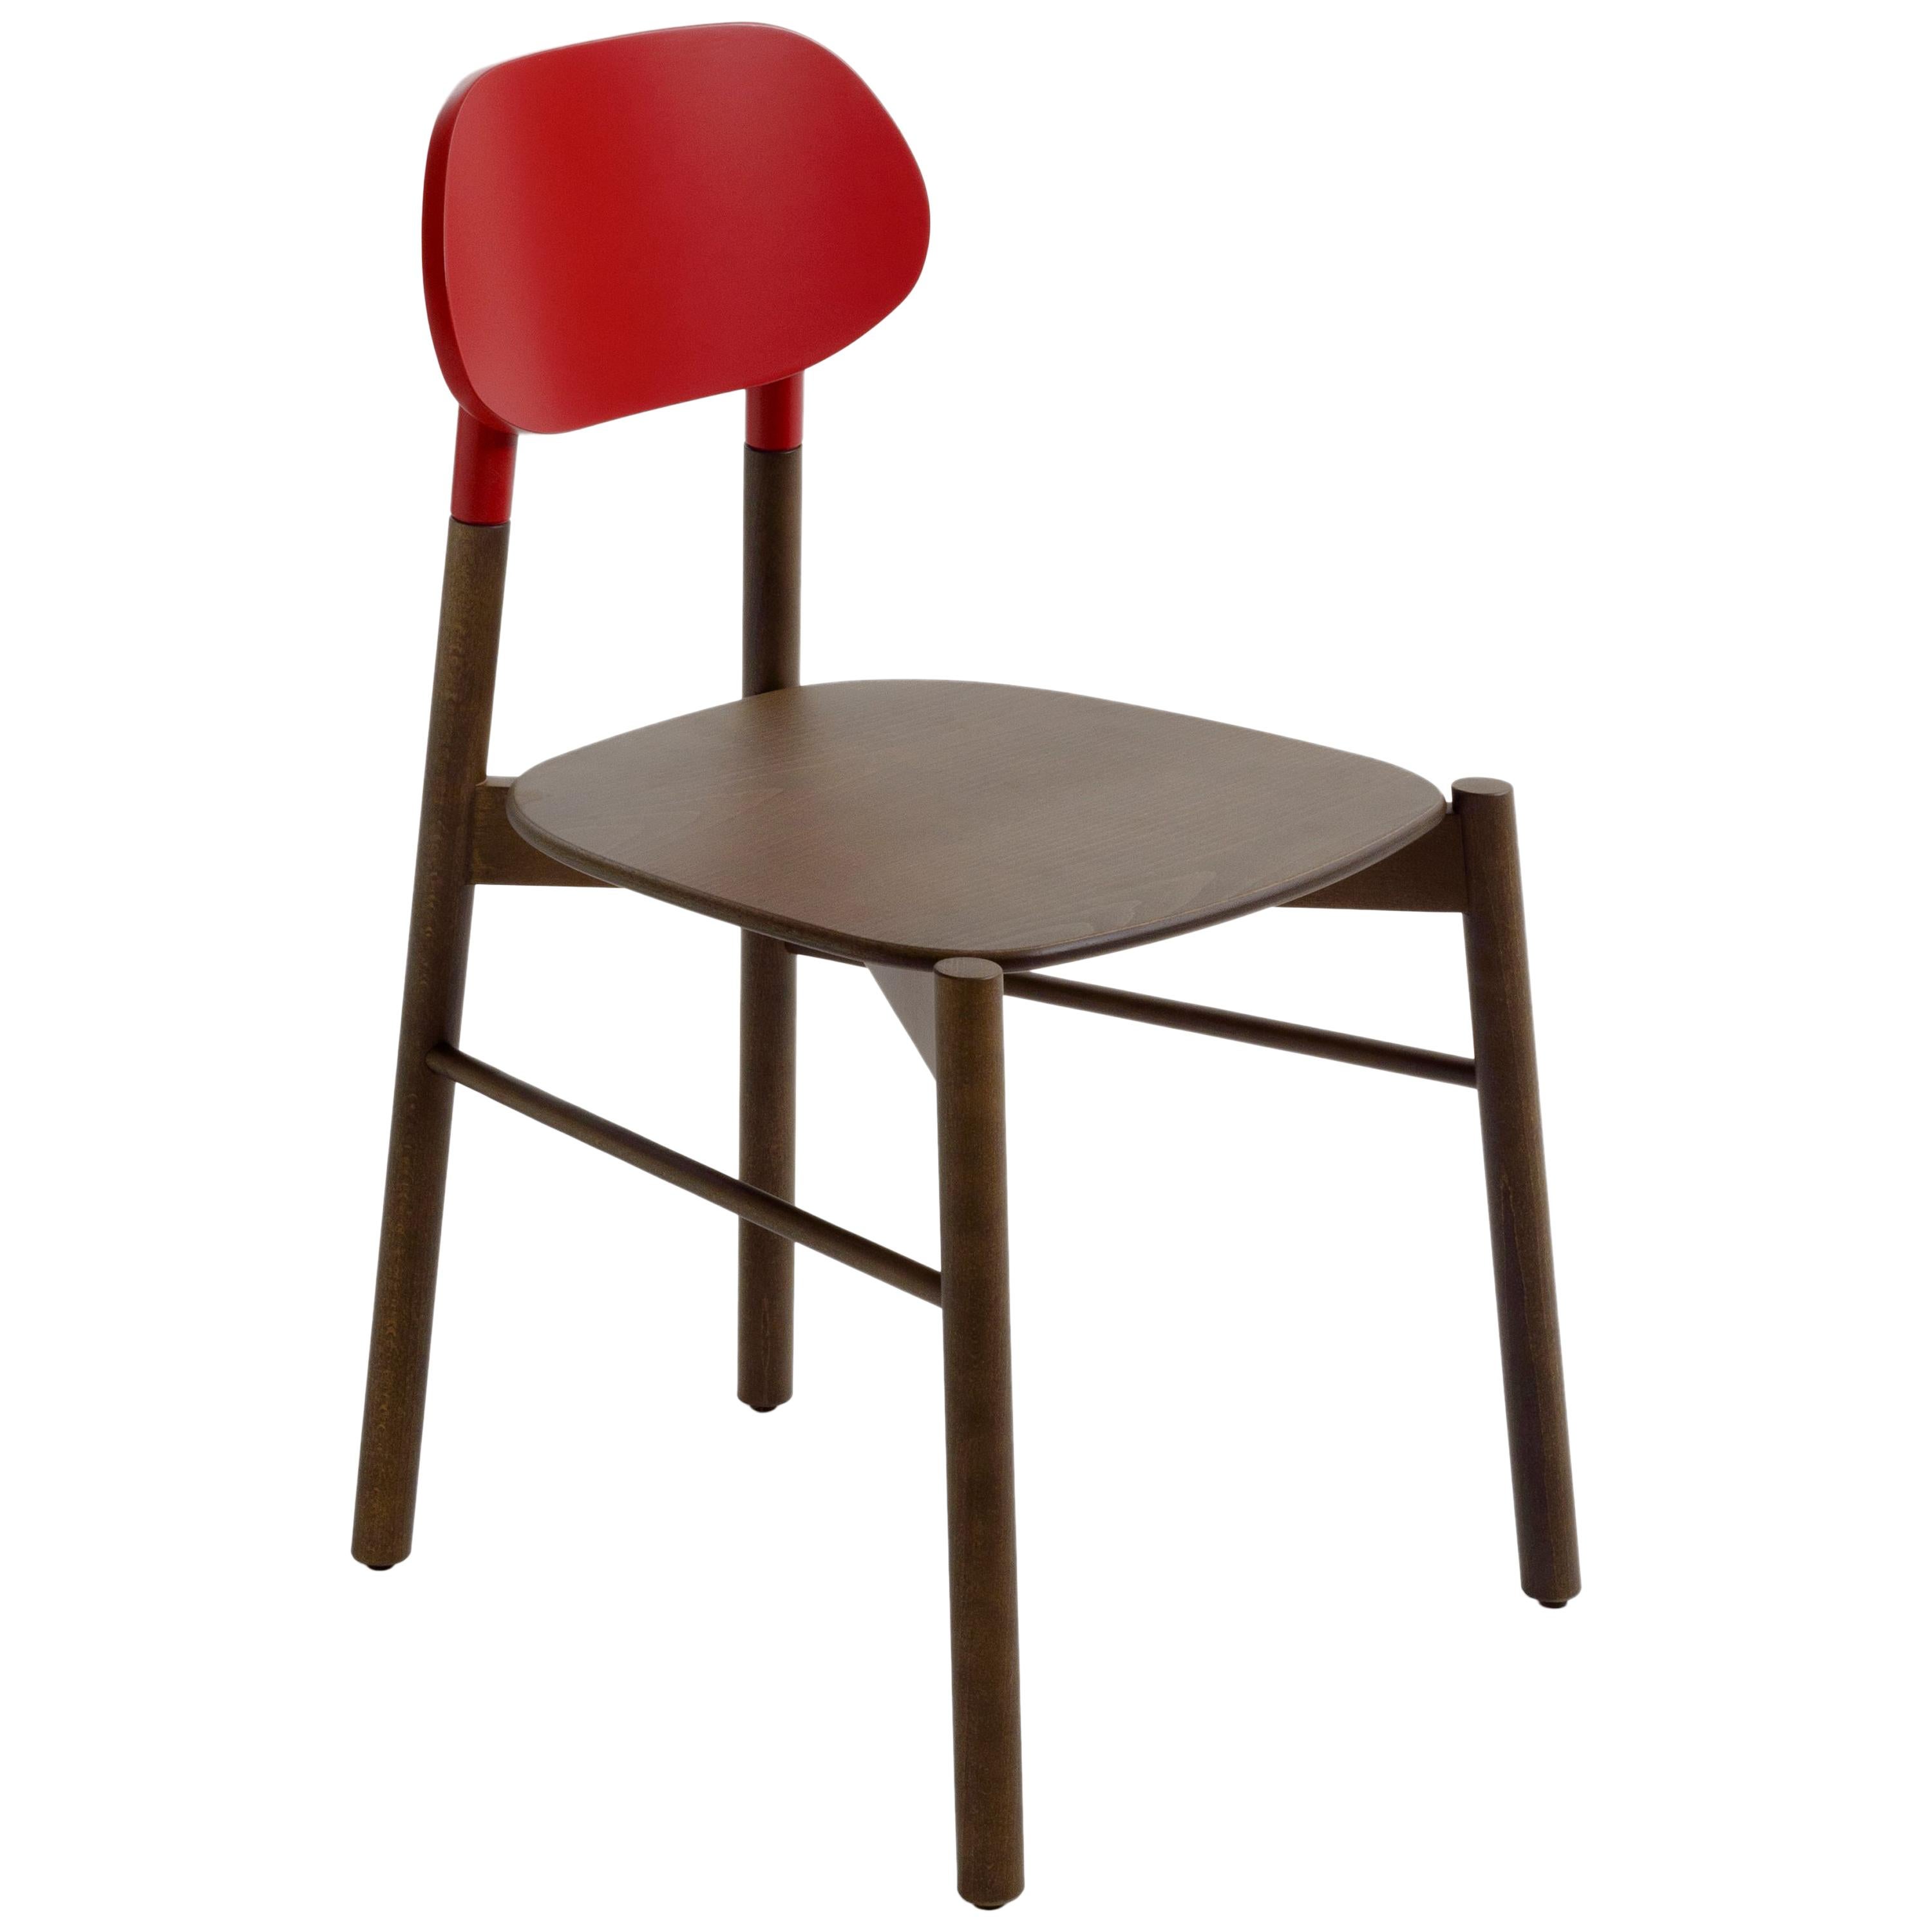 Ein unverzichtbarer Stuhl in der Form, aber kostbar in den Farben. Die spitz zulaufenden und länglichen Beine des Sitzes sind vom Bokken inspiriert, einer hölzernen Nachbildung des japanischen Schwertes, das beim Training der japanischen Kampfkünste